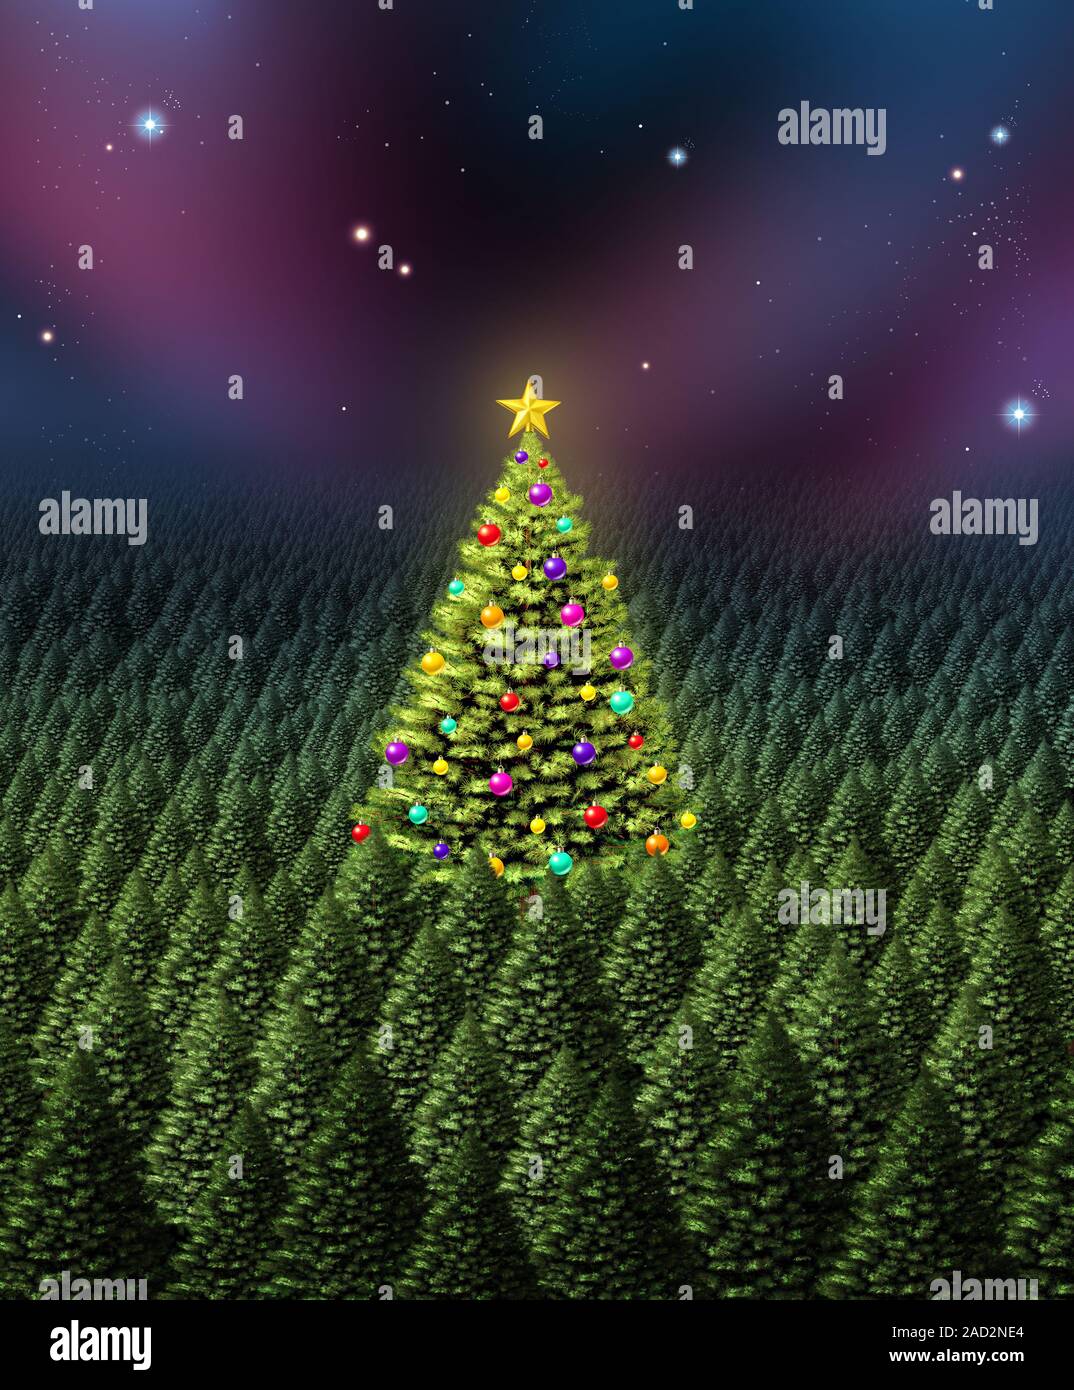 Weihnachtsbaum Grußkarten-Konzept als Dichter Kiefernwald mit einer einzelnen Pflanze mit Ornamenten verziert als shinning Star. Stockfoto